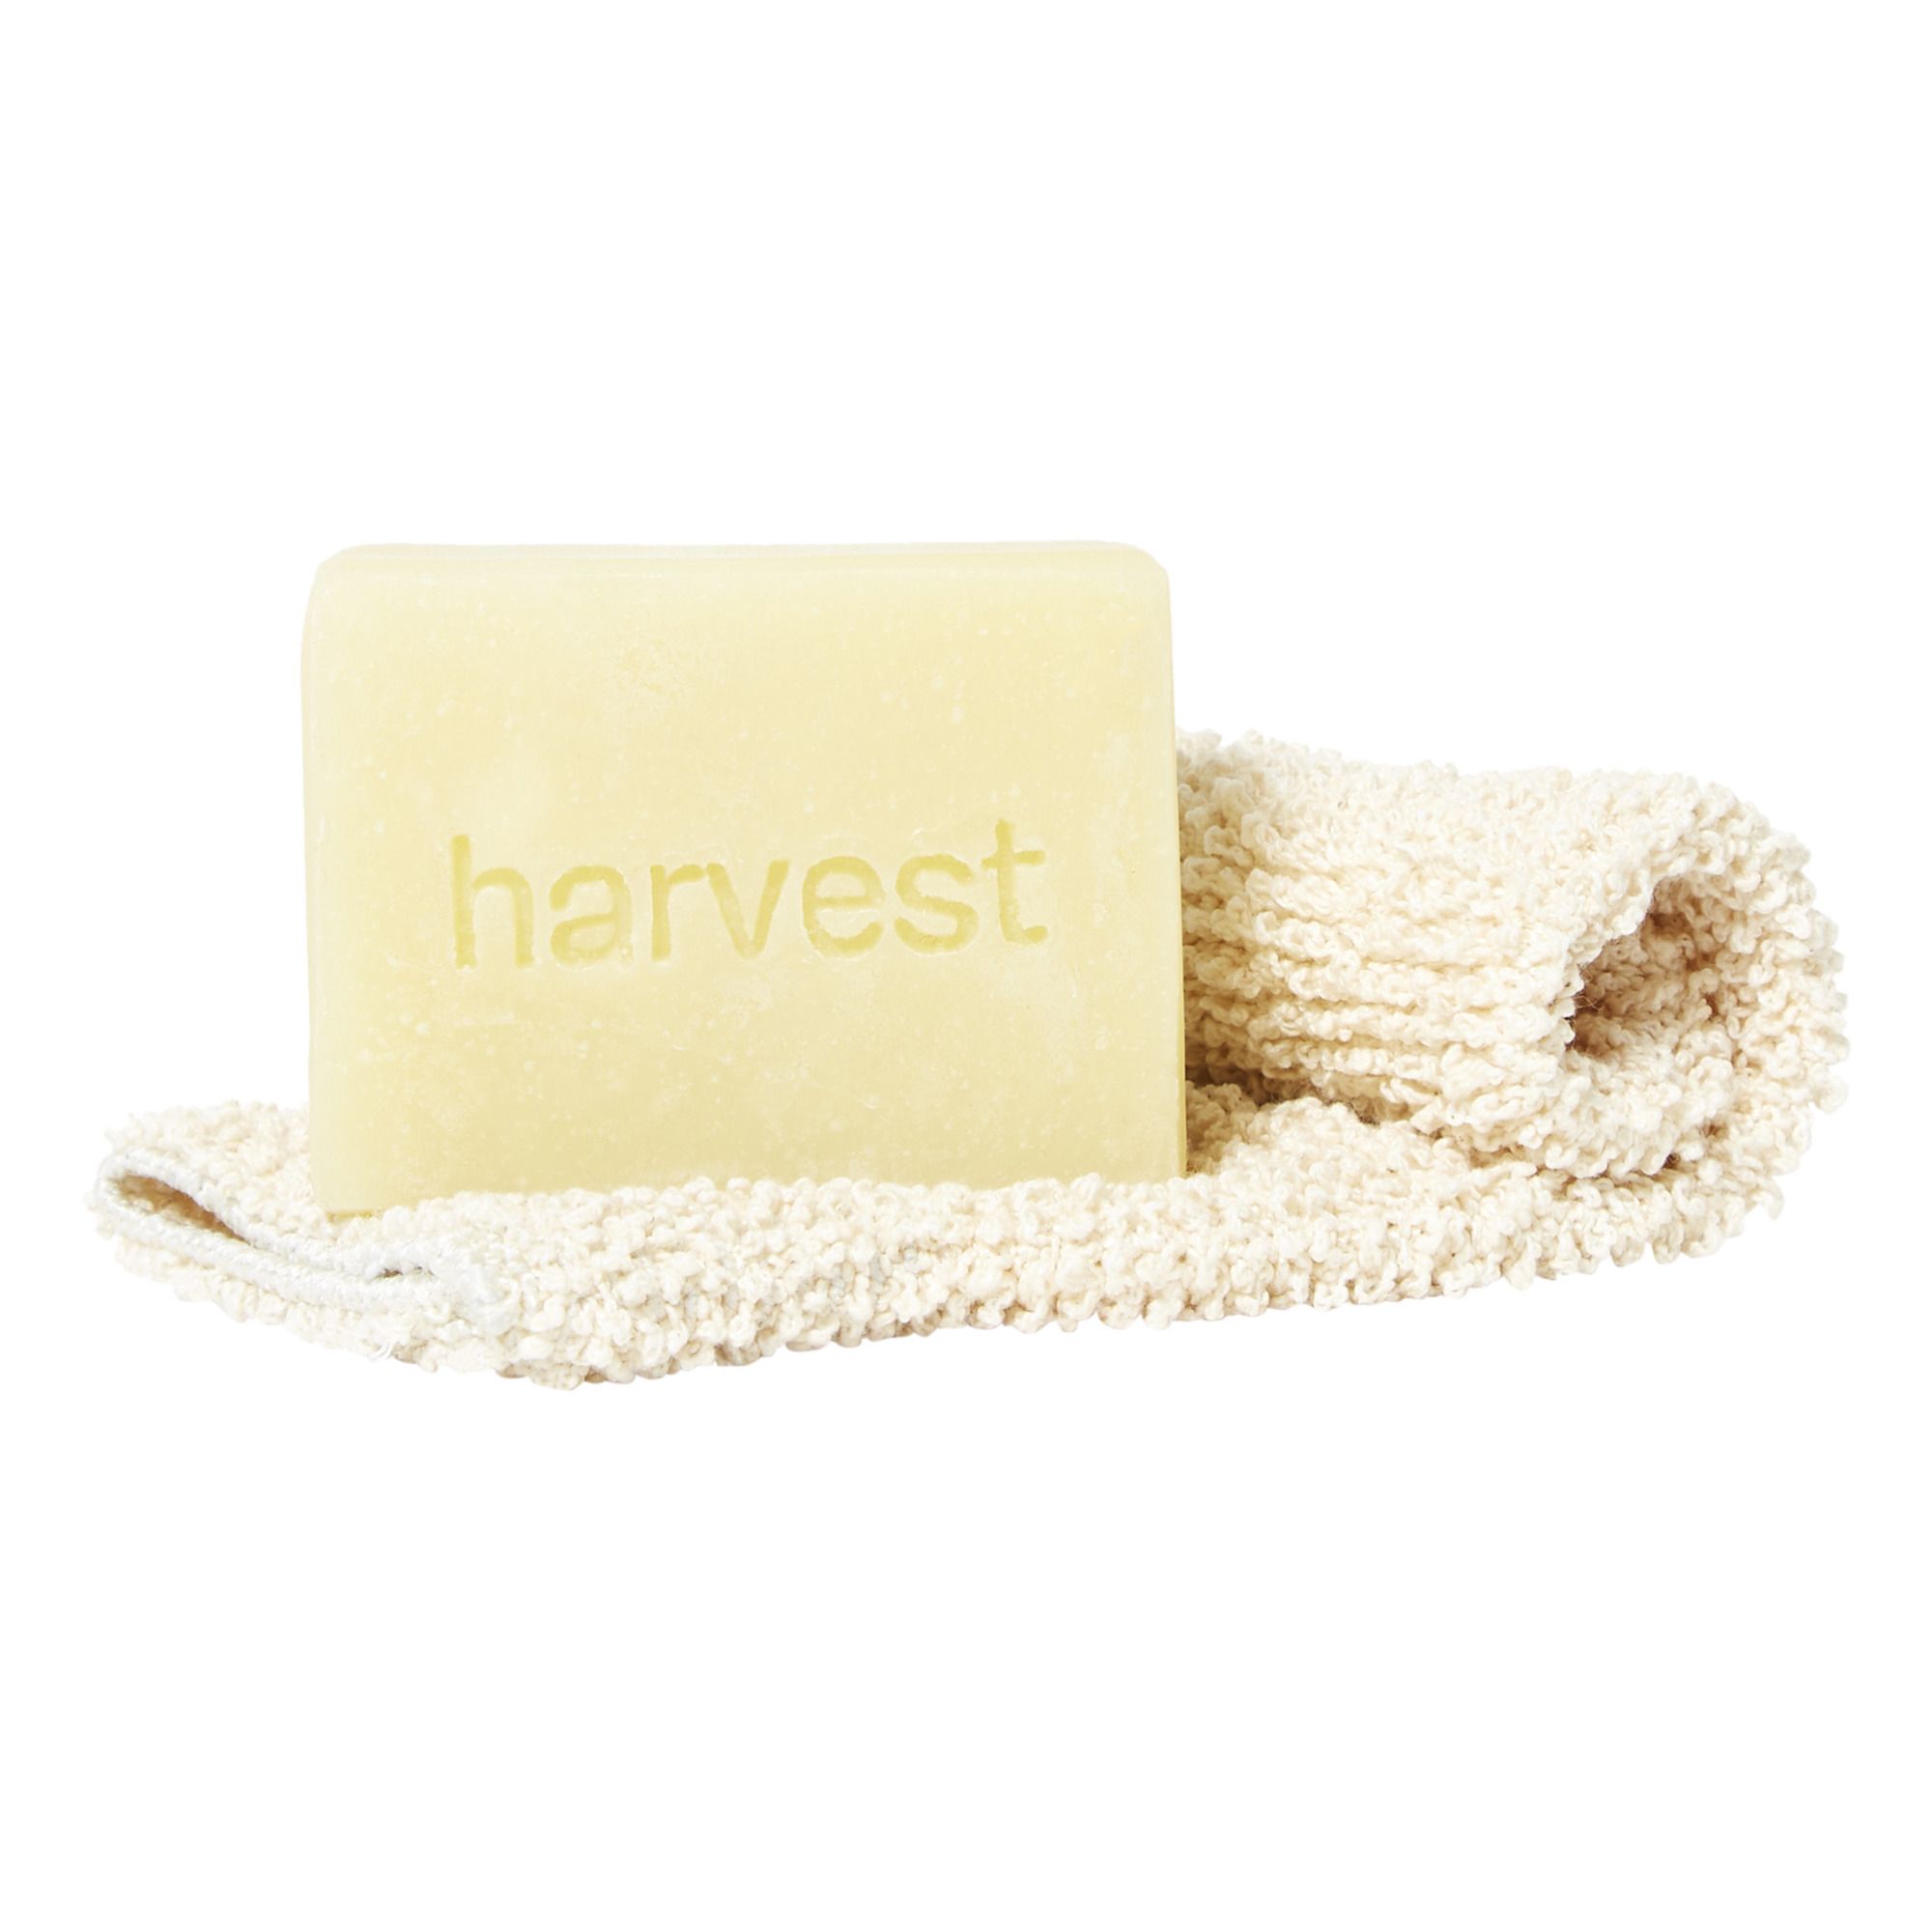 Harvest Skincare - Savon Jasmin et Calendula et gant exfoliant - 100 g - Jaune